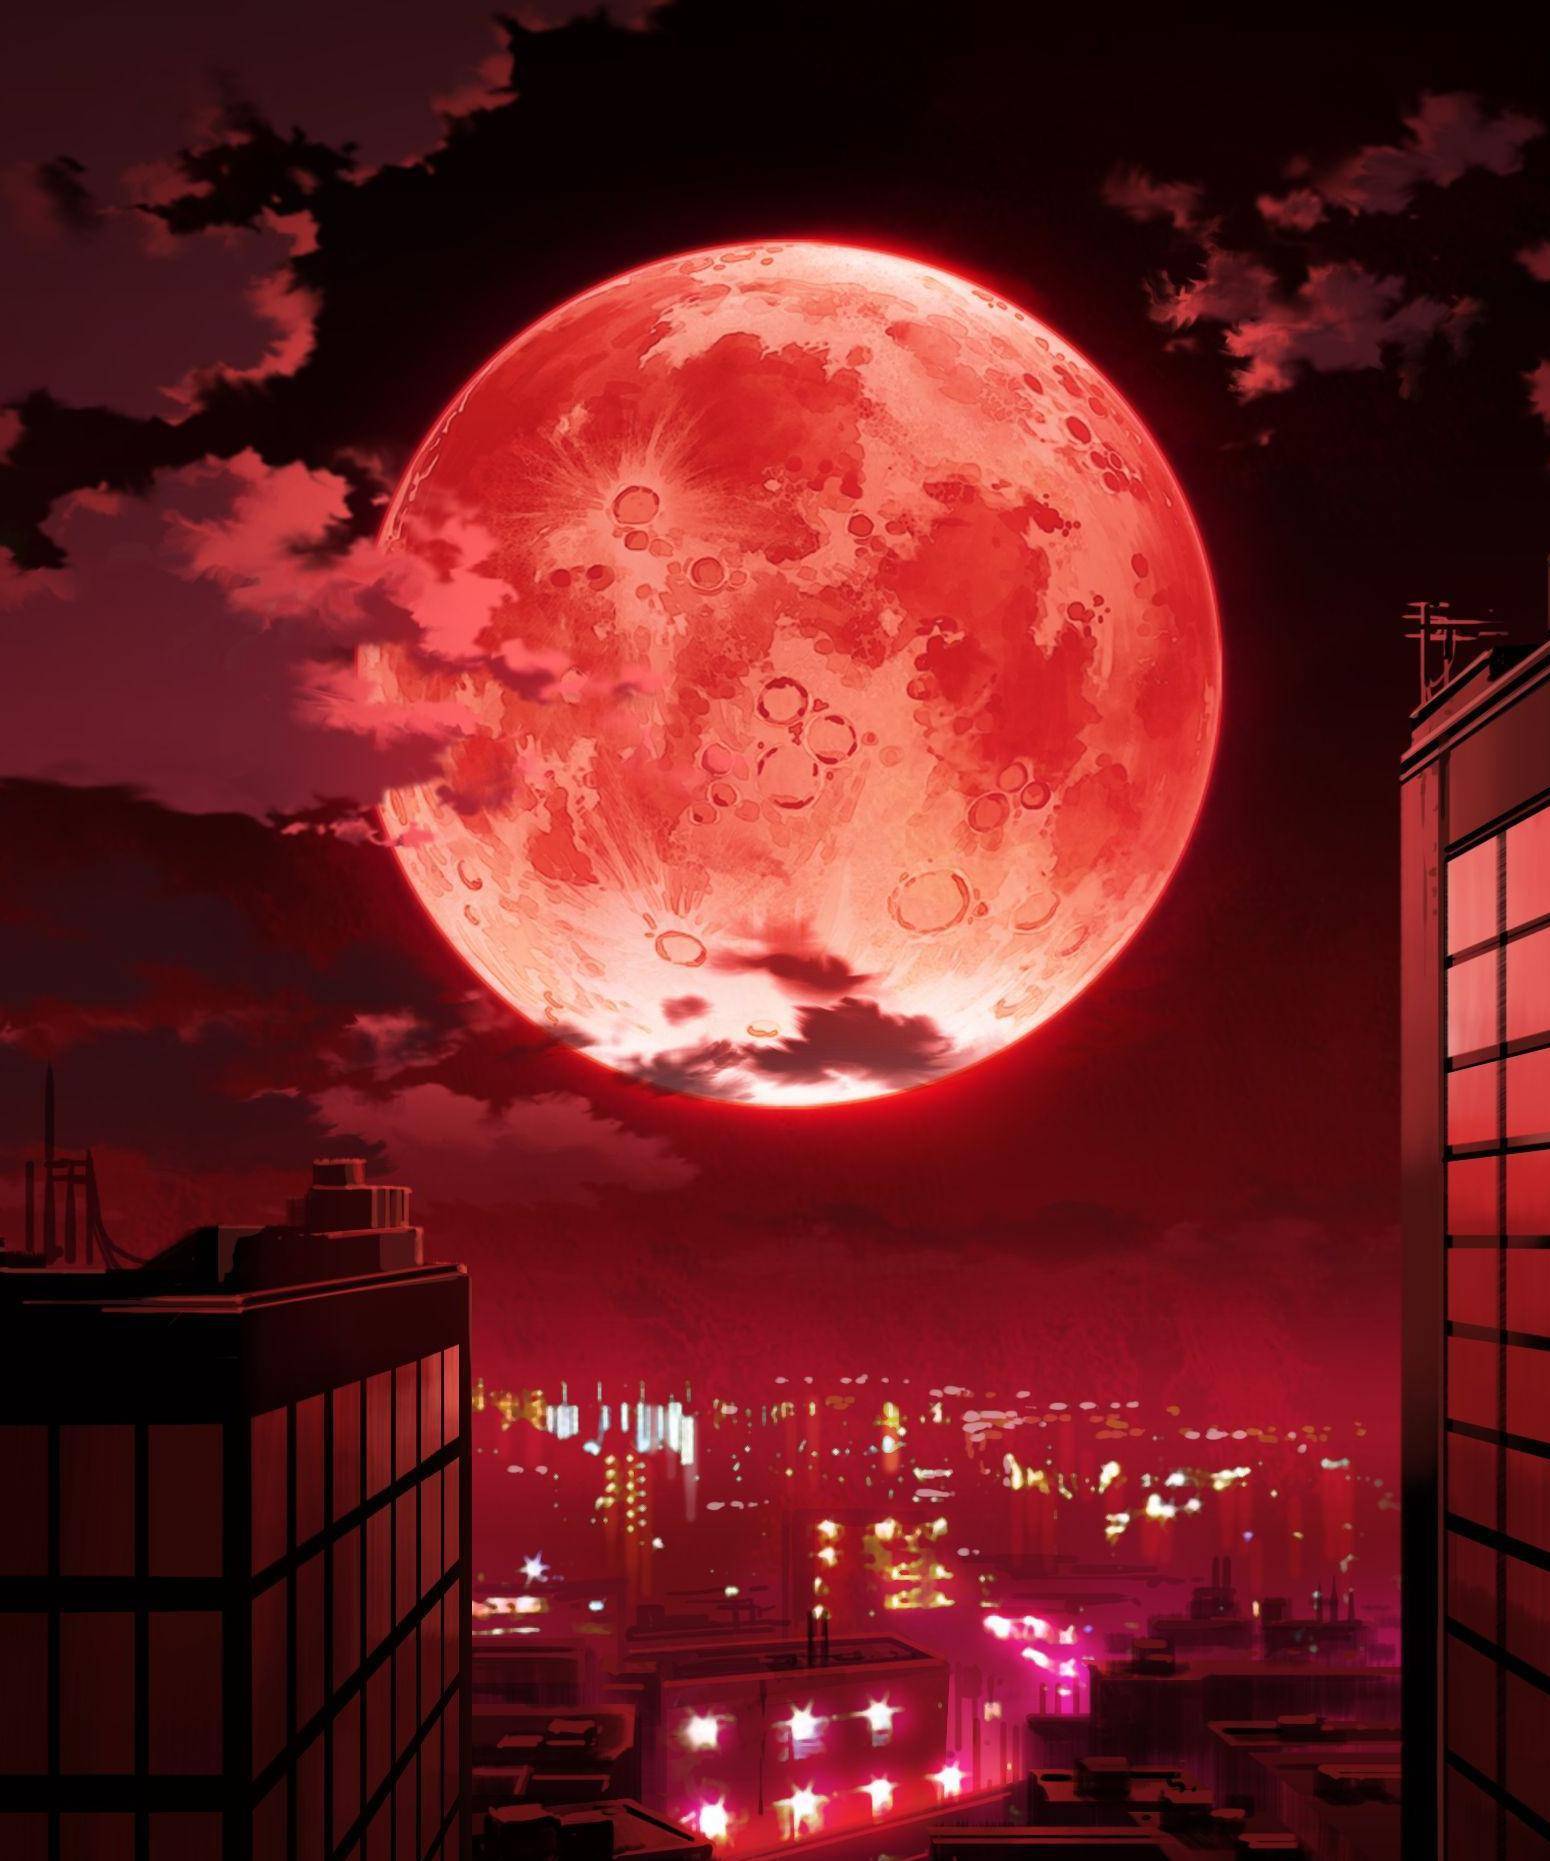 当月全食产生时,浓郁的地球大气层会其他颜色的光源,仅留有红色光源能